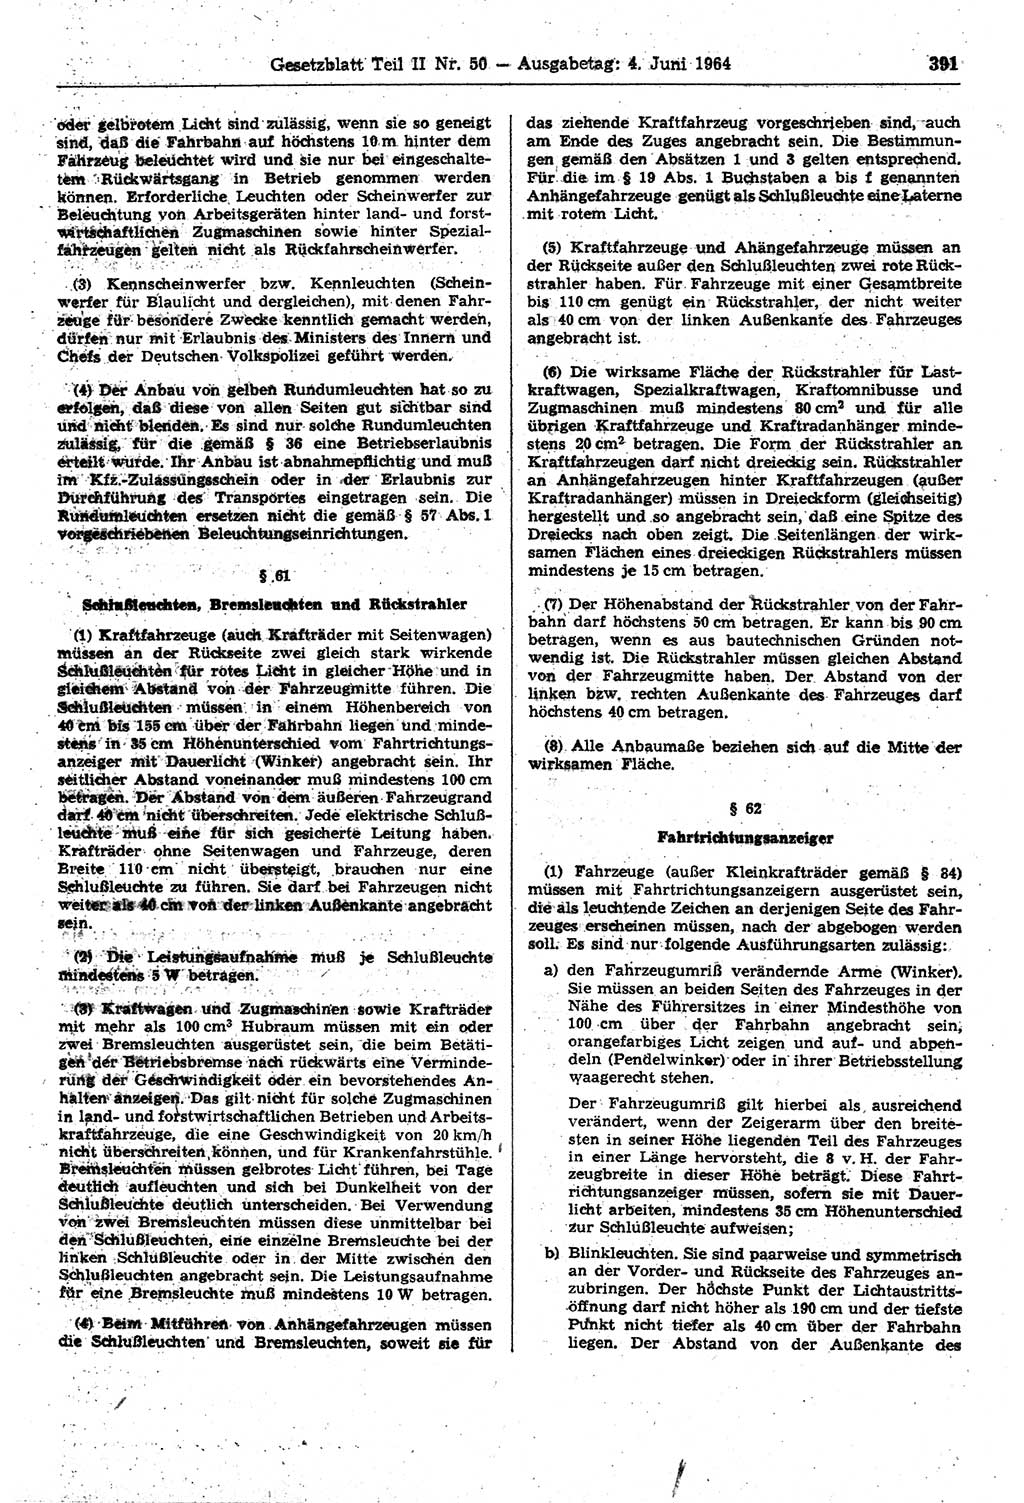 Gesetzblatt (GBl.) der Deutschen Demokratischen Republik (DDR) Teil ⅠⅠ 1964, Seite 391 (GBl. DDR ⅠⅠ 1964, S. 391)